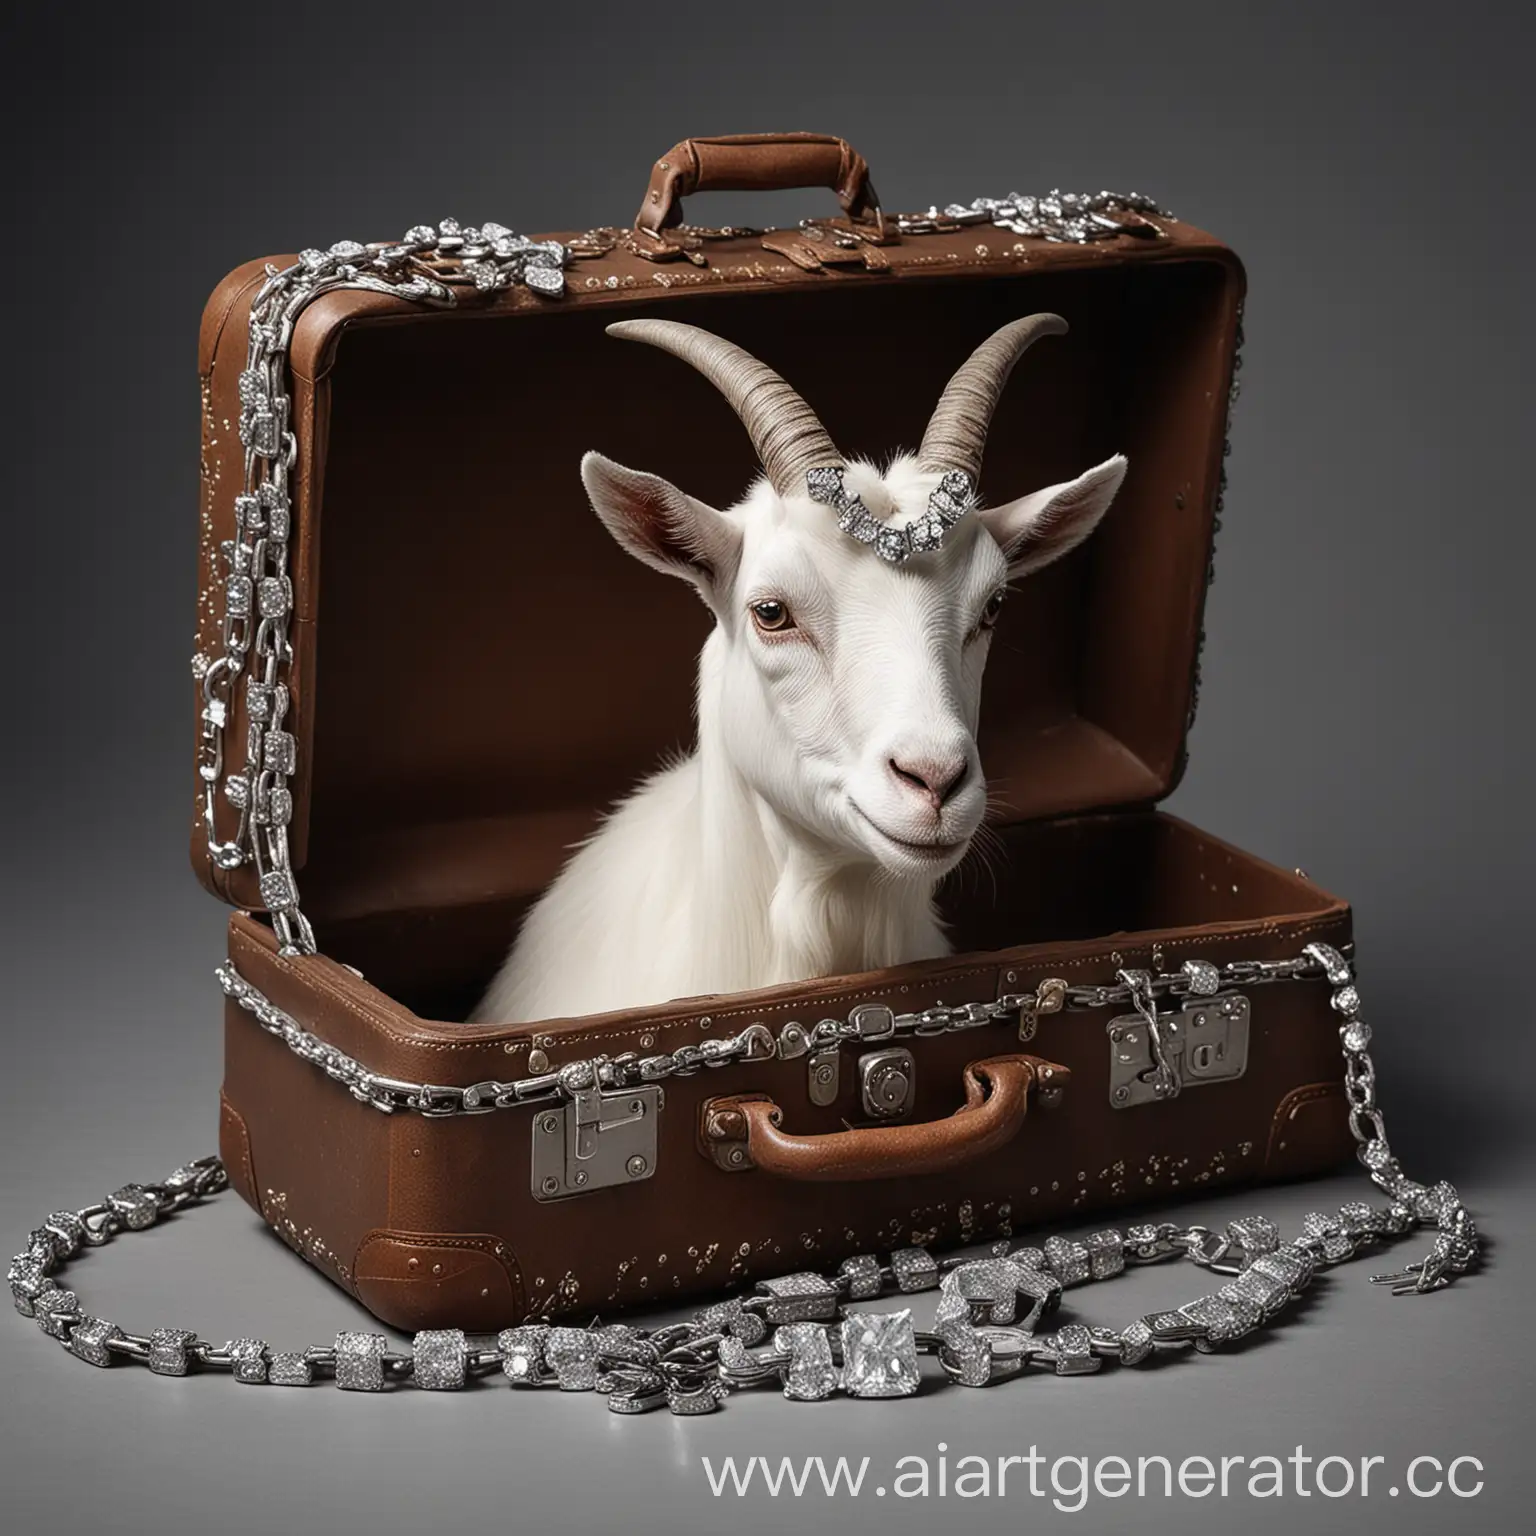 Diamond-Goat-Chain-Found-in-Stolen-Suitcase